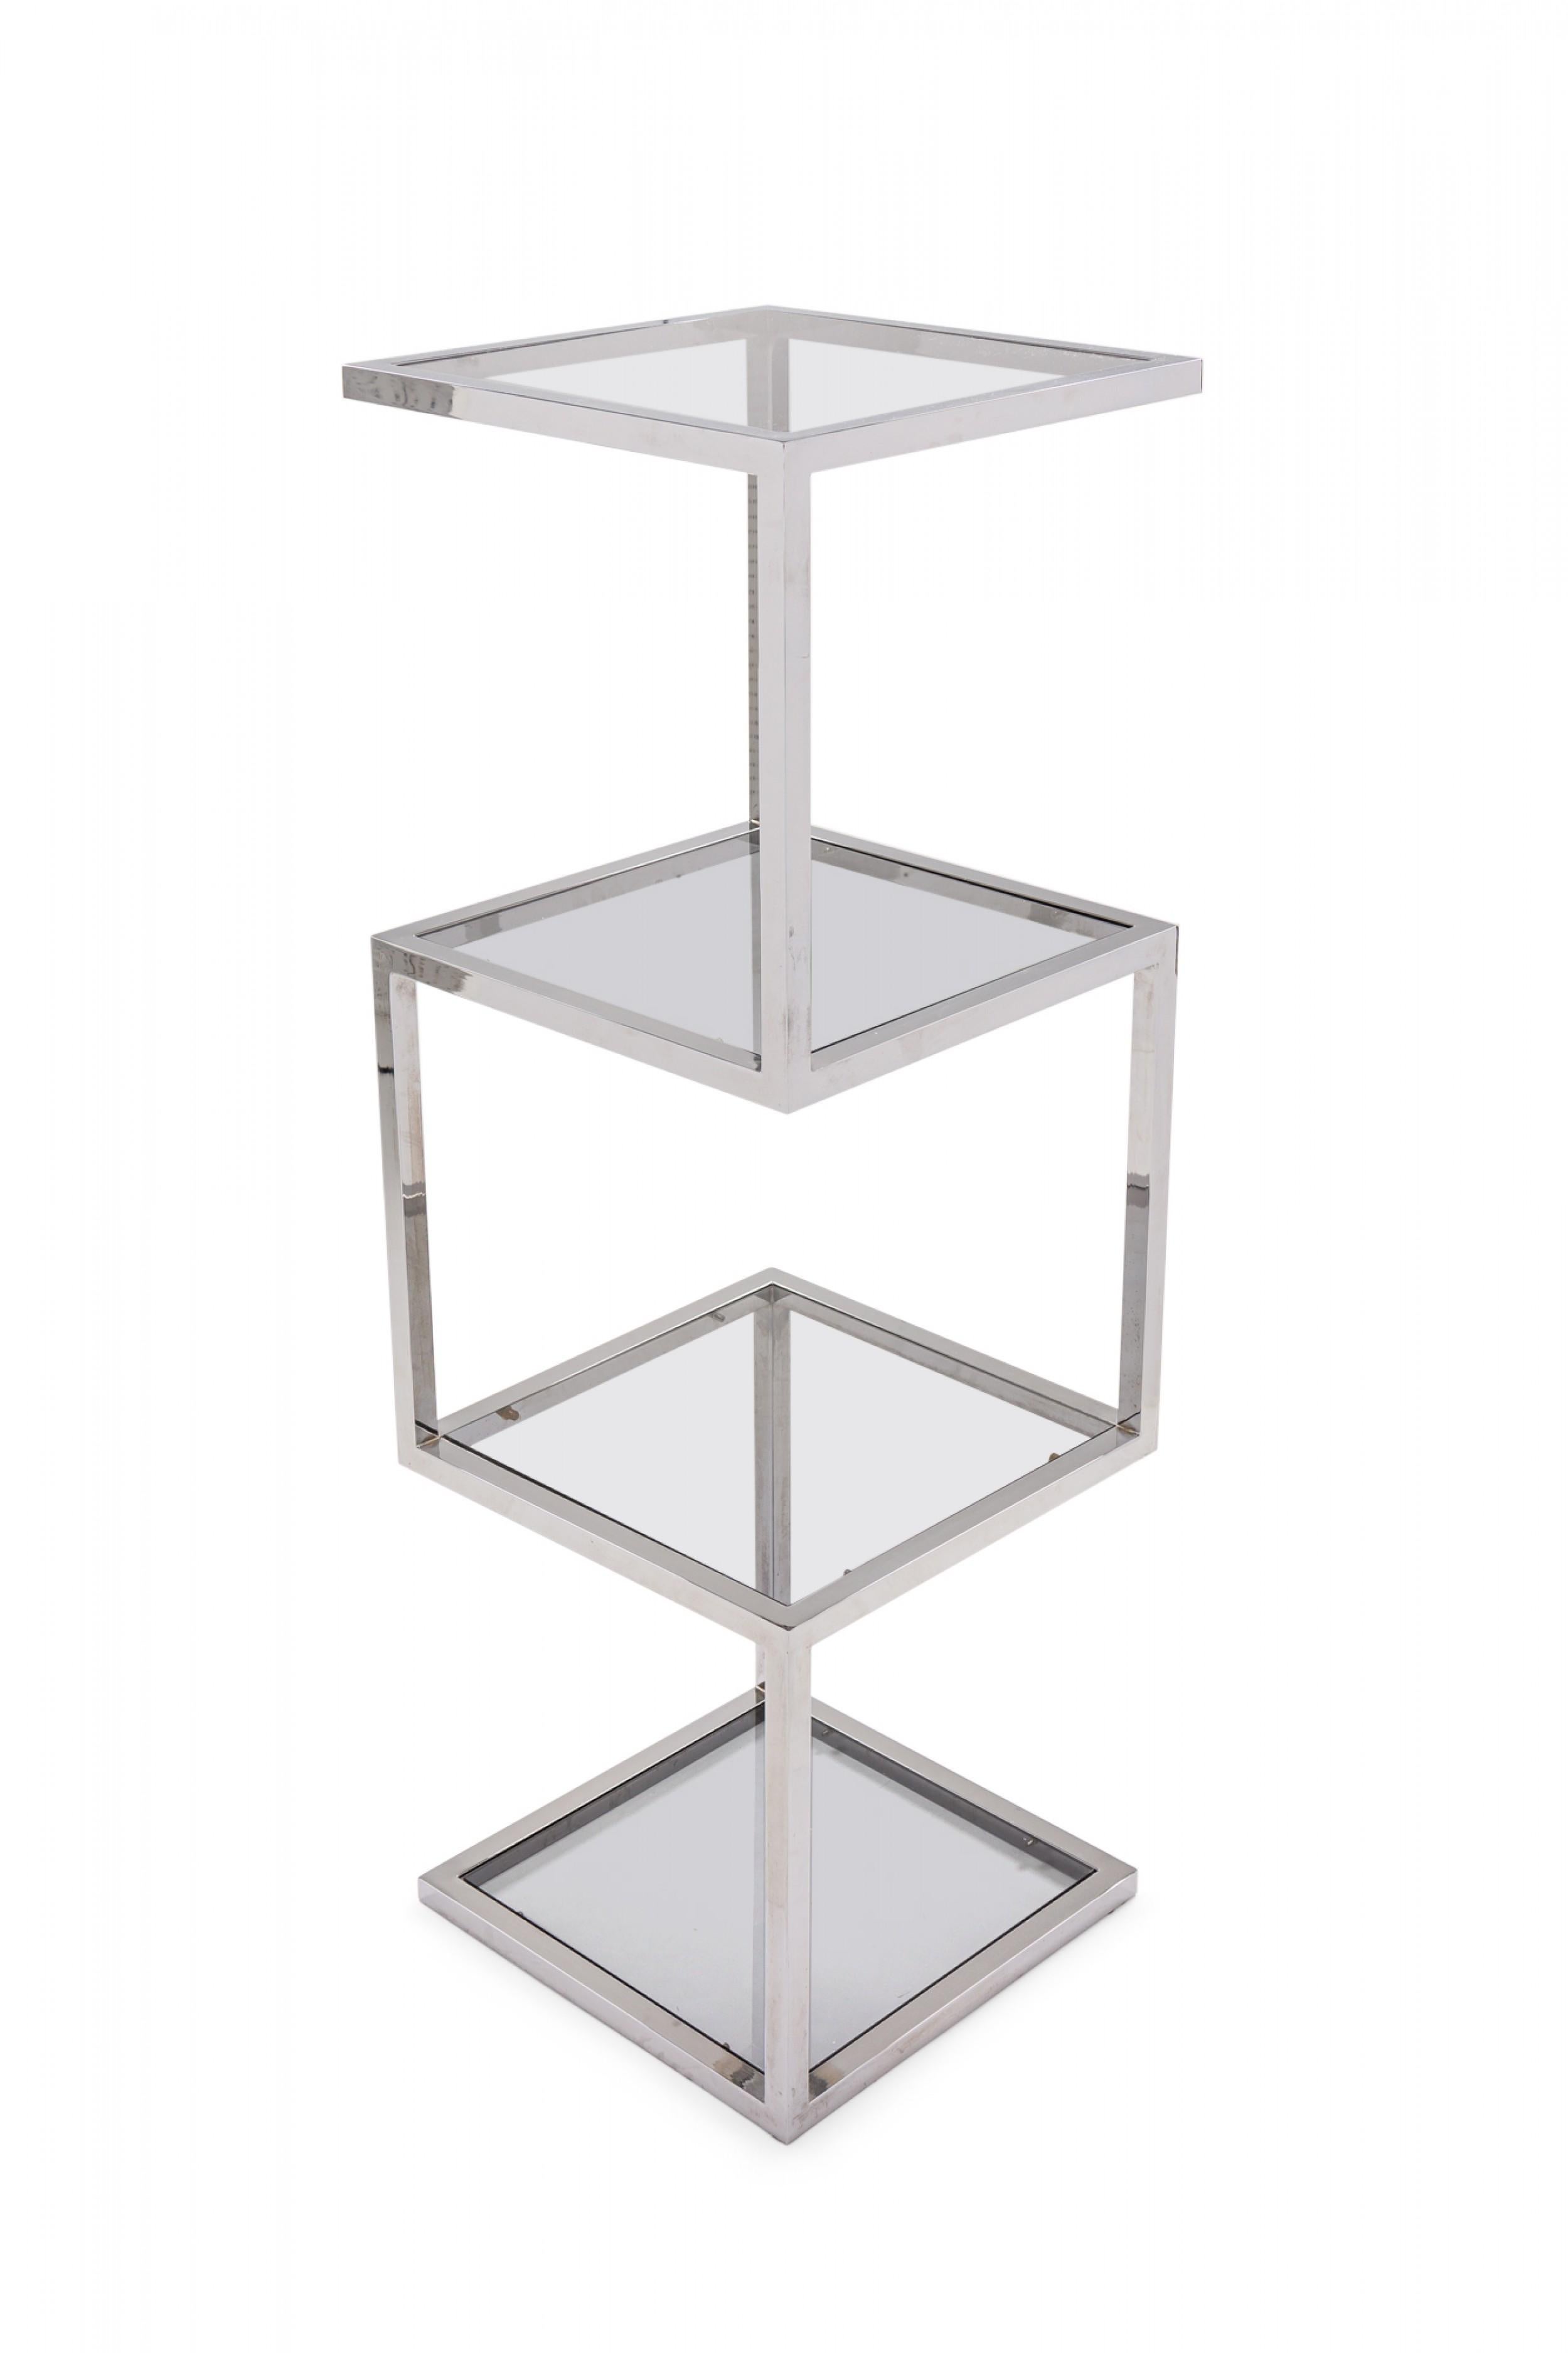 Amerikanische Mid-Century Modern Etagere / Regal mit einer geometrischen Form poliert verchromtem Stahlrahmen und quadratischen Rauchglasböden.